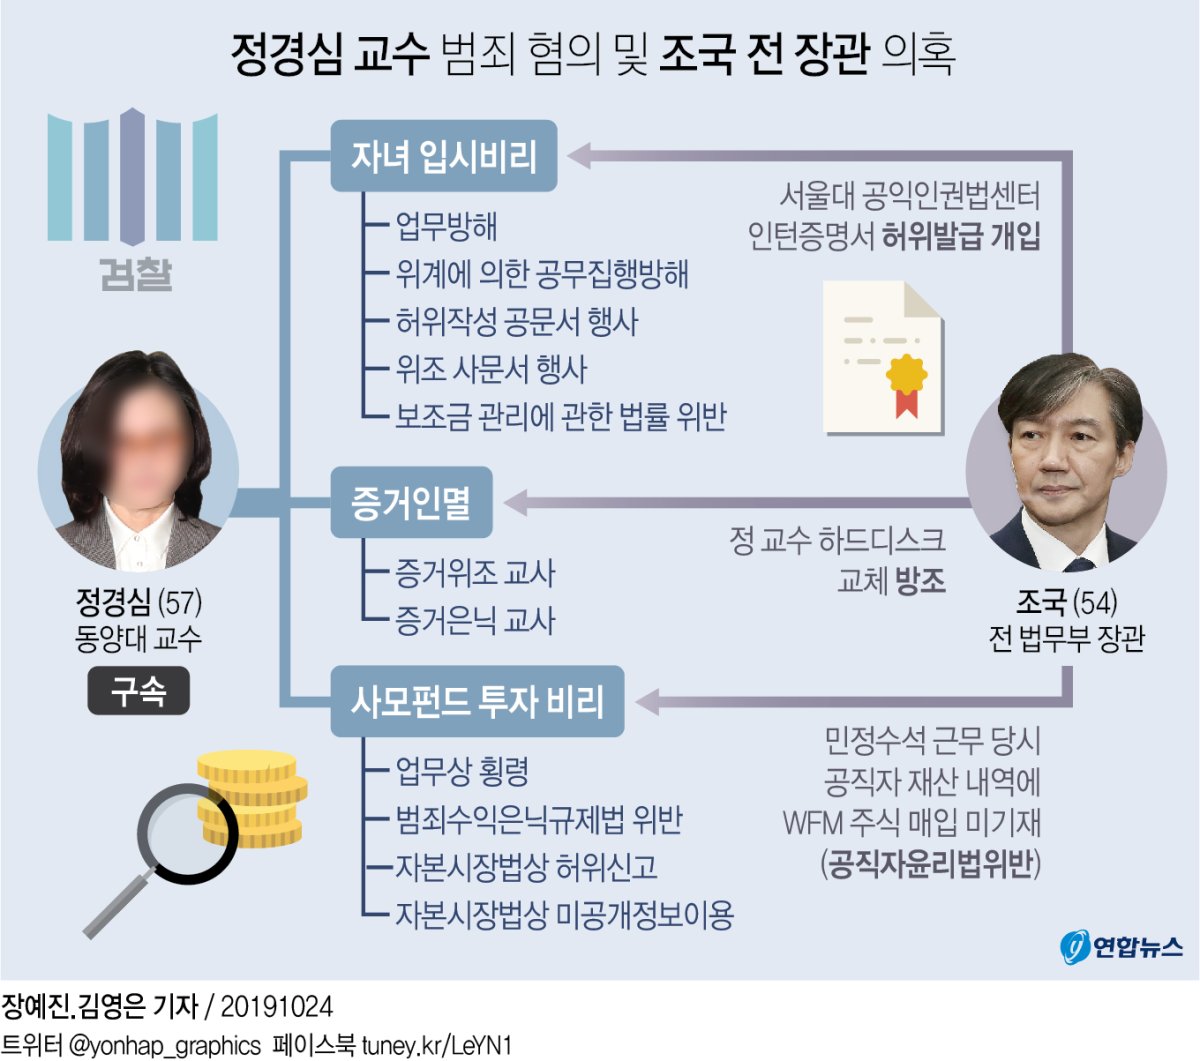 [그래픽] 정경심 교수 범죄 혐의 및 조국 전 장관 의혹